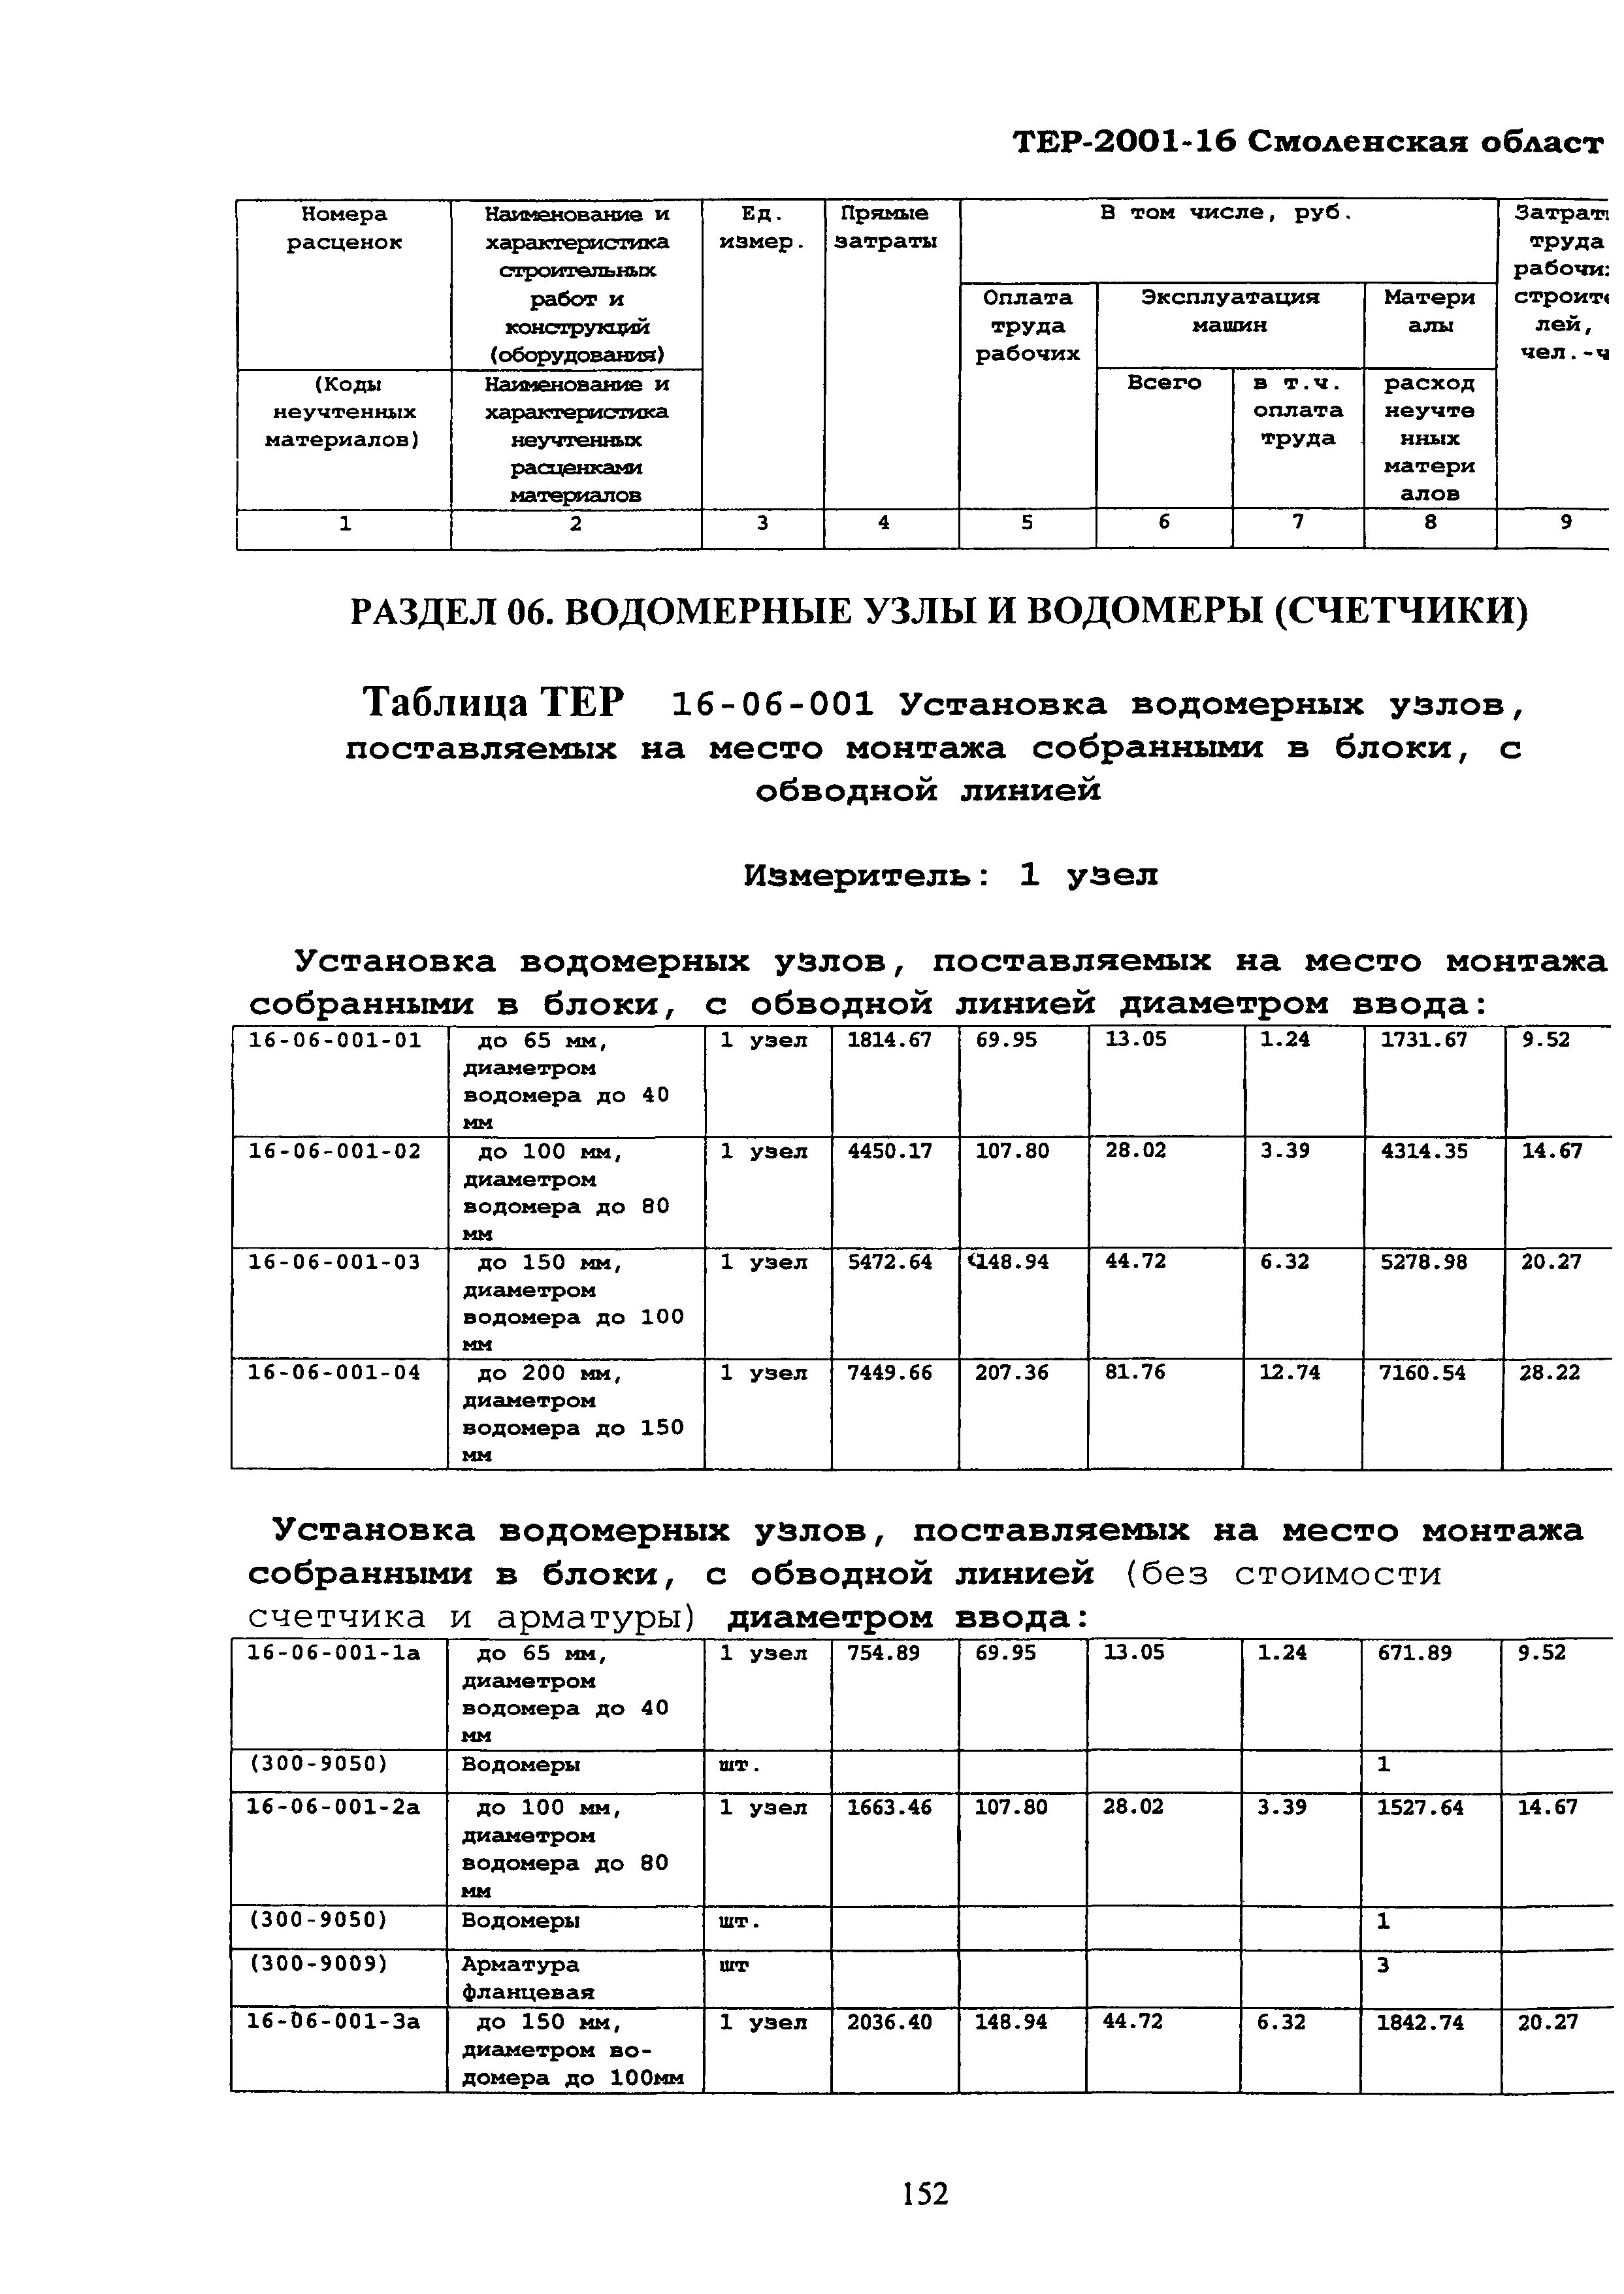 ТЕР Смоленская область 2001-16